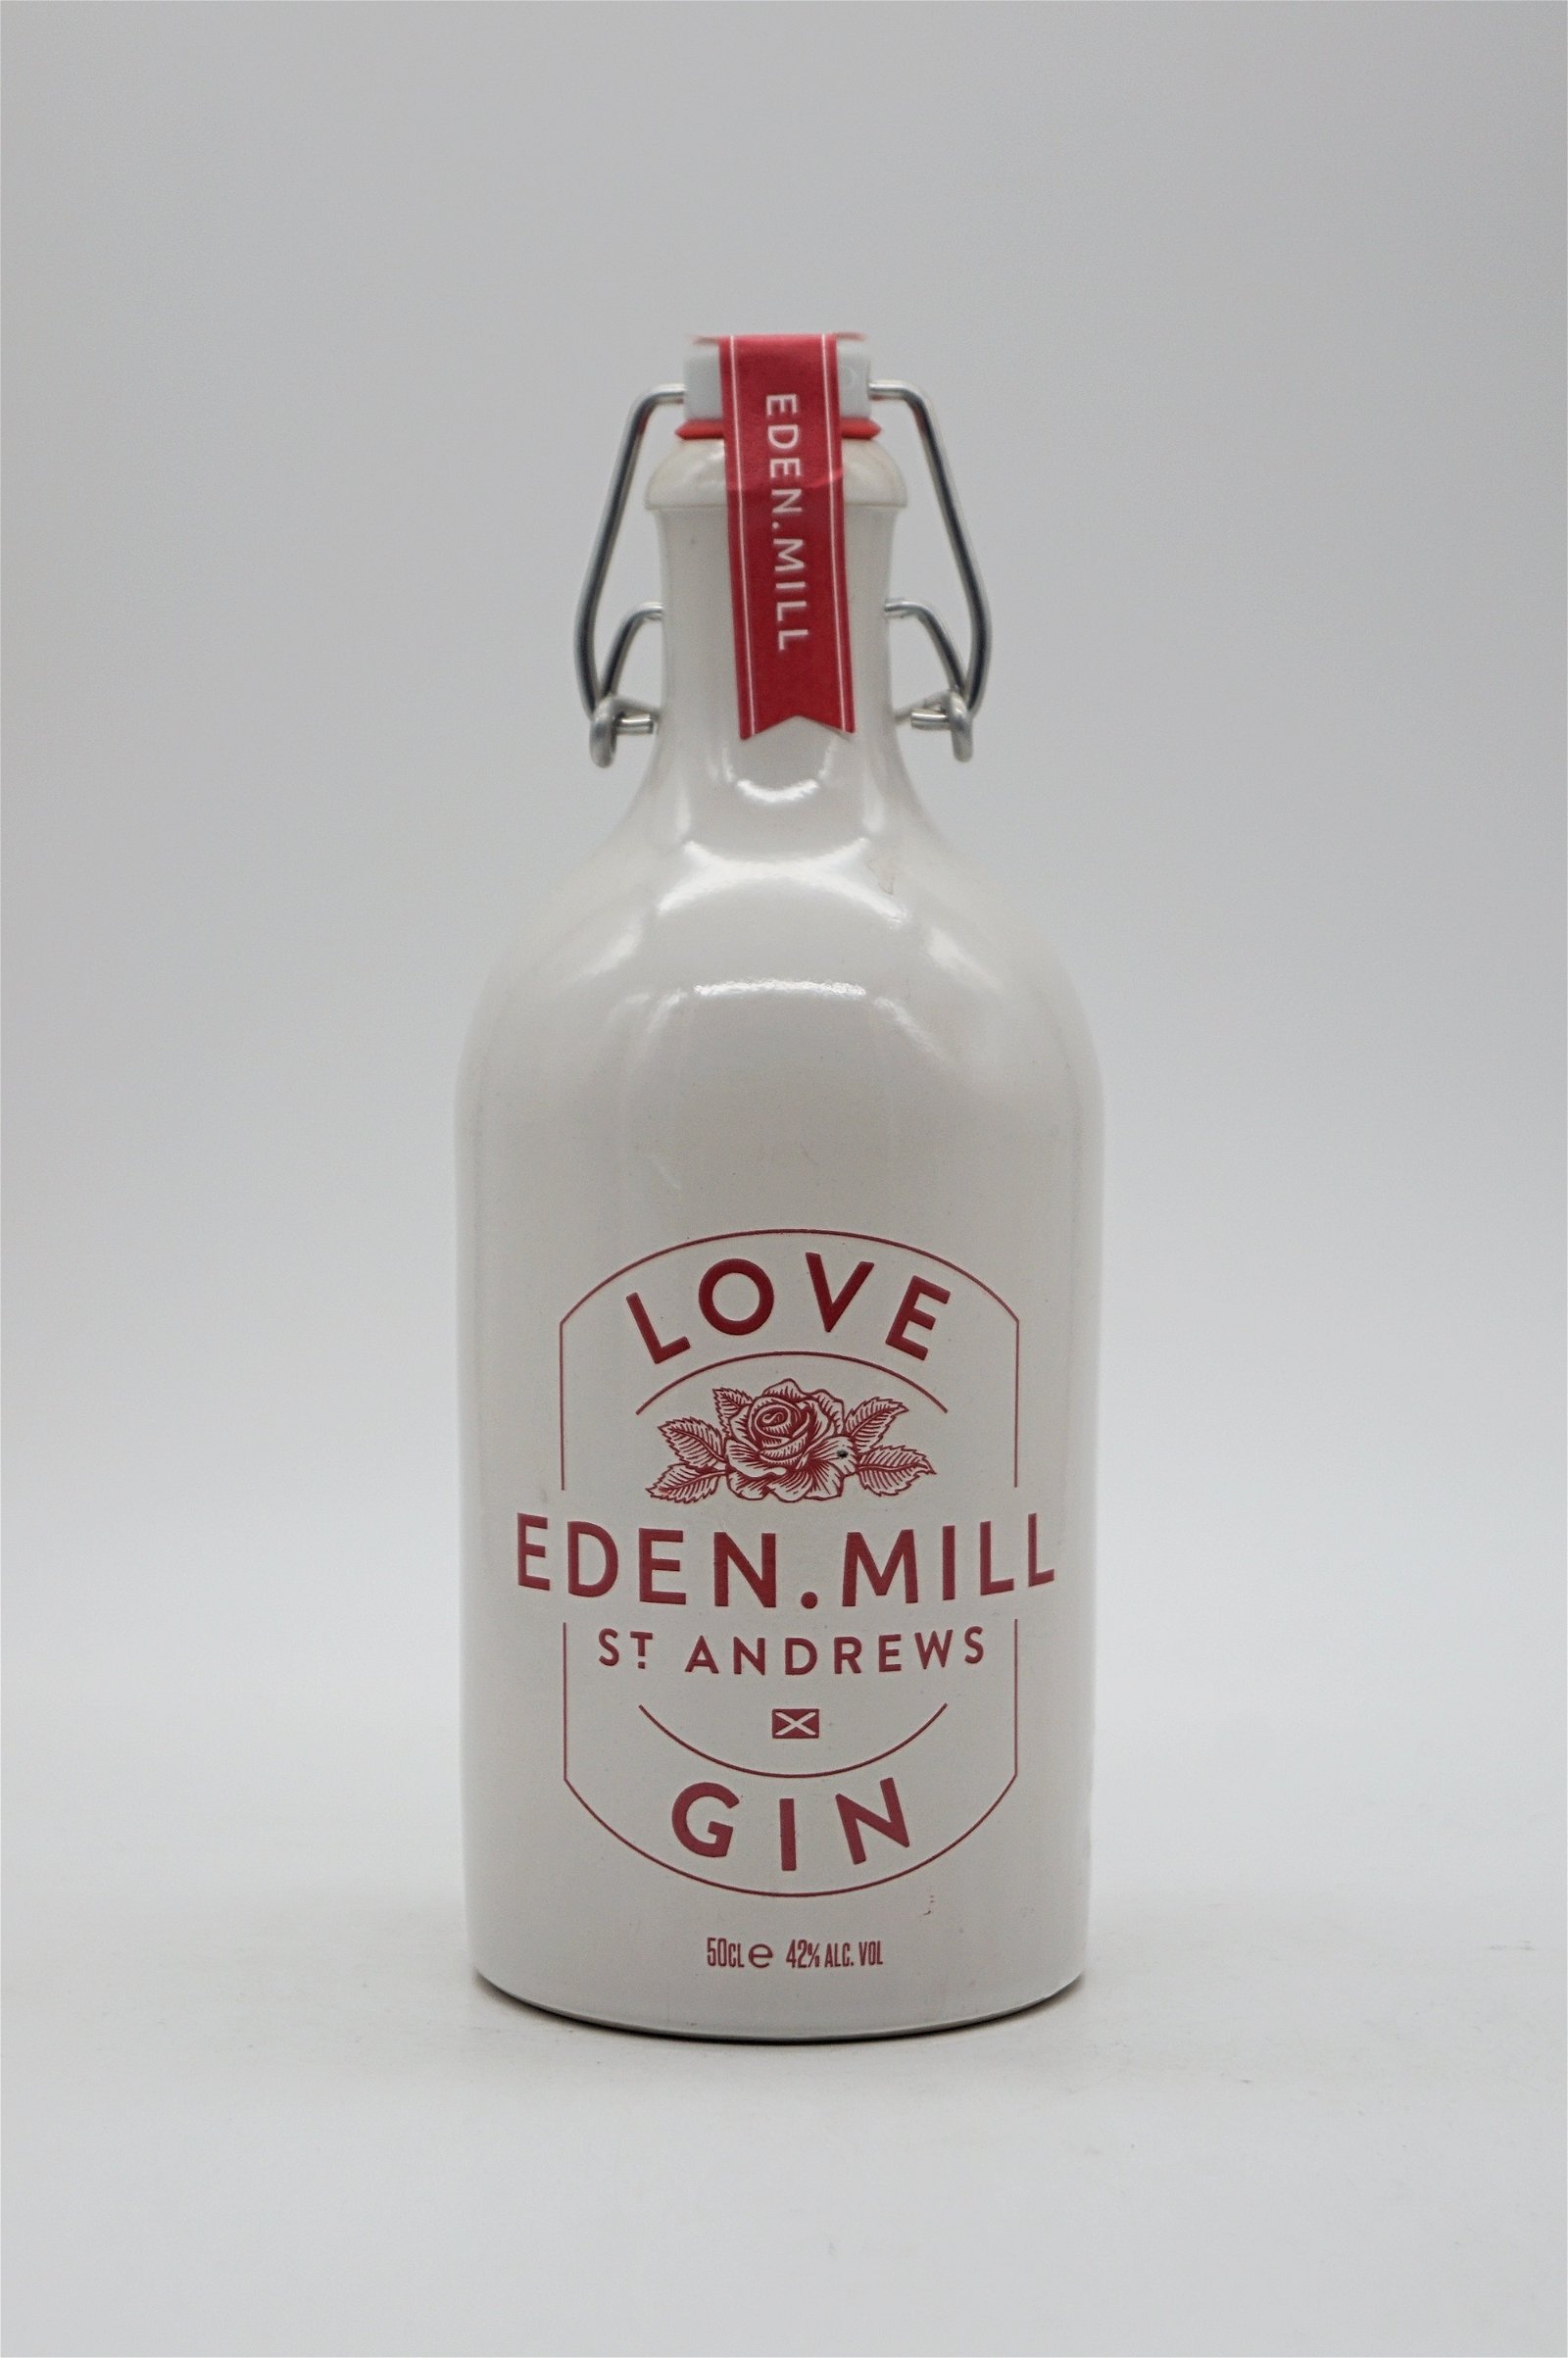 Eden Mill Gin Love